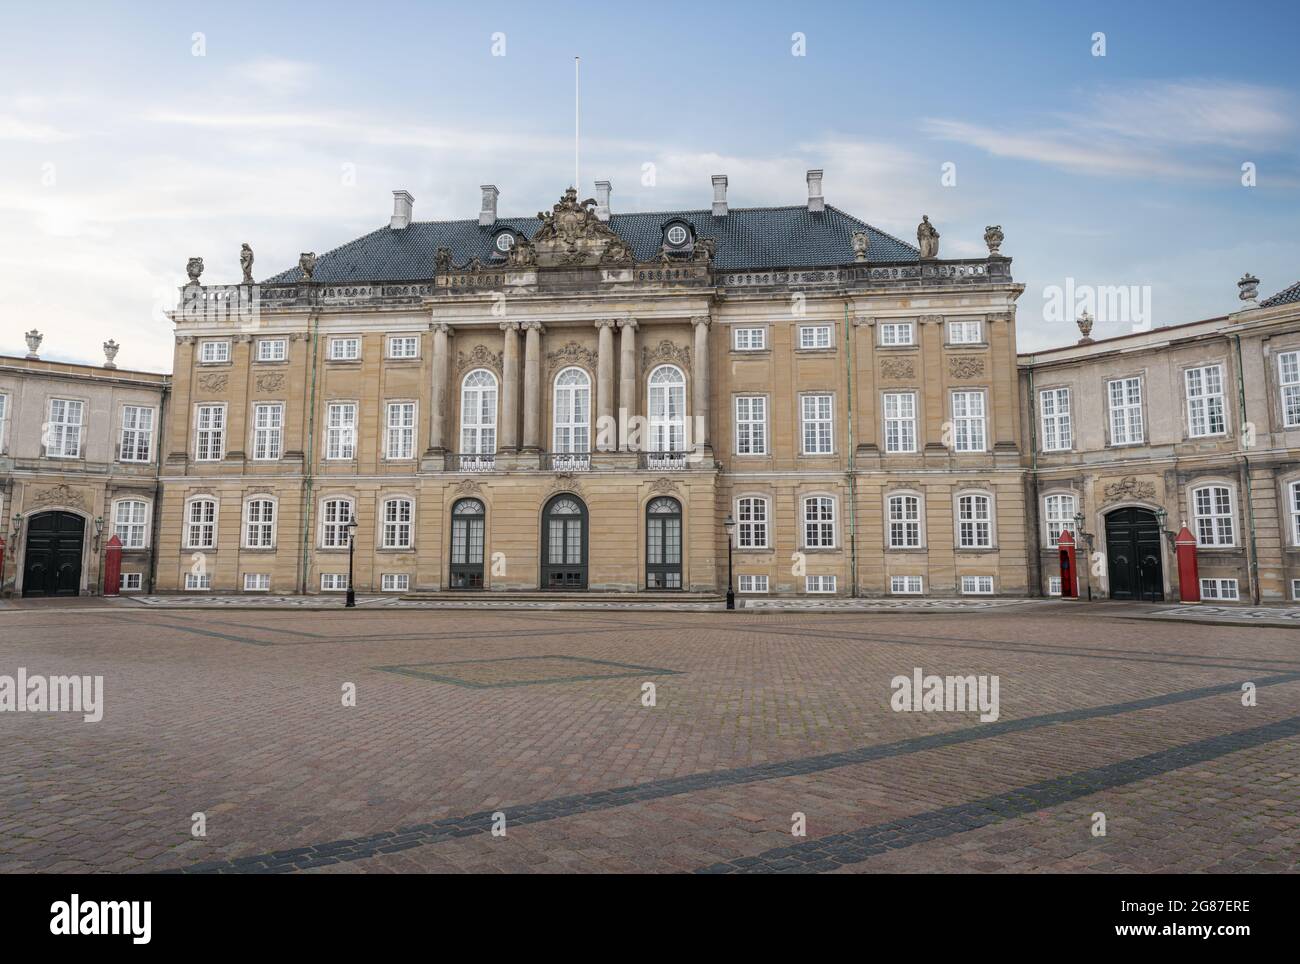 Palais Amalienborg - Palais chrétien IX, résidence officielle de la reine Margrethe II - Copenhague, Danemark Banque D'Images